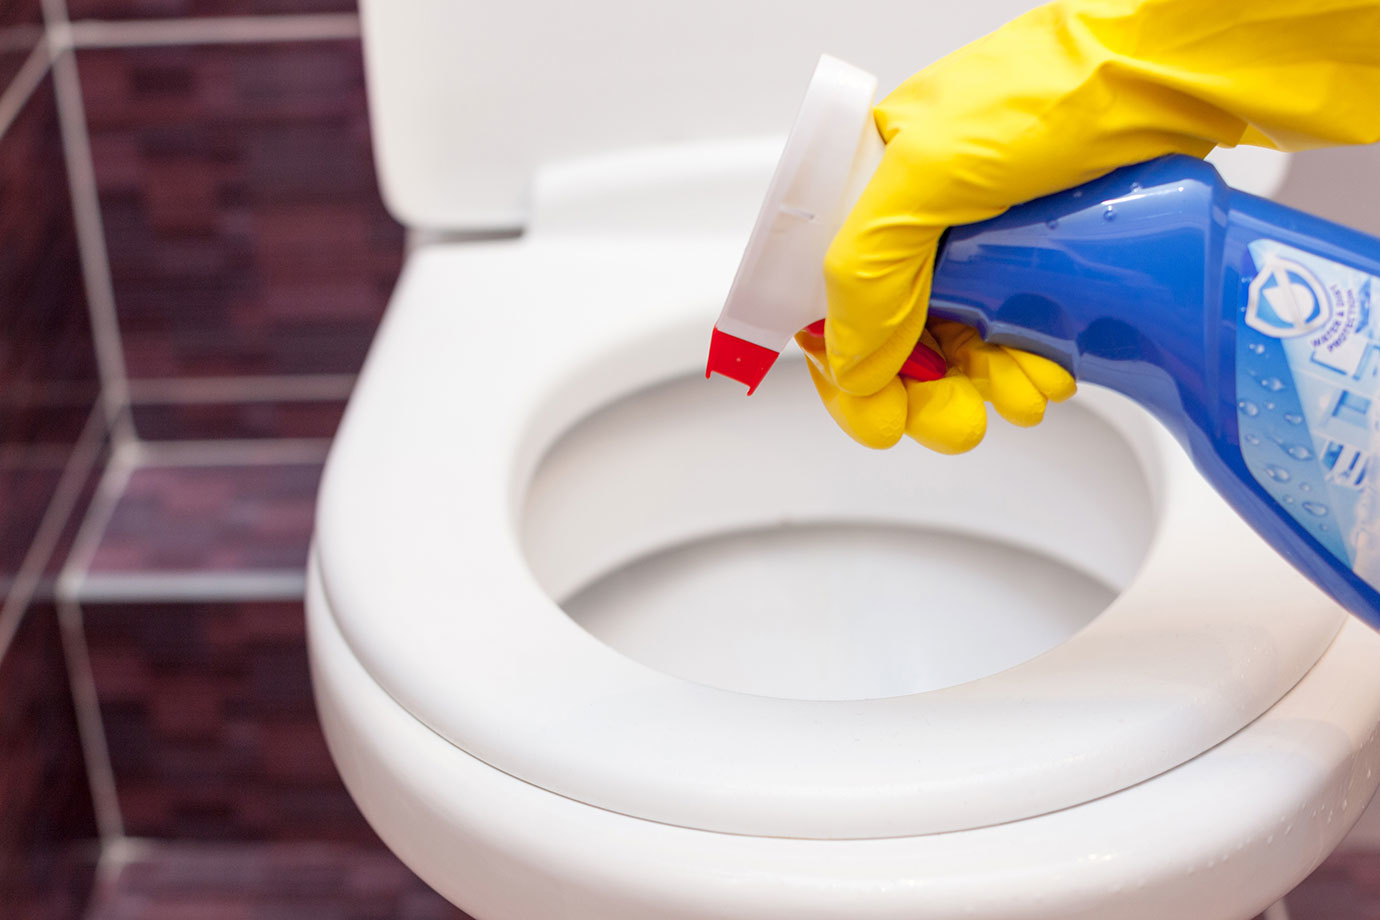 面倒なトイレ掃除が圧倒的に捗る 楽させてくれるトイレ掃除グッズ7選 Single Hack